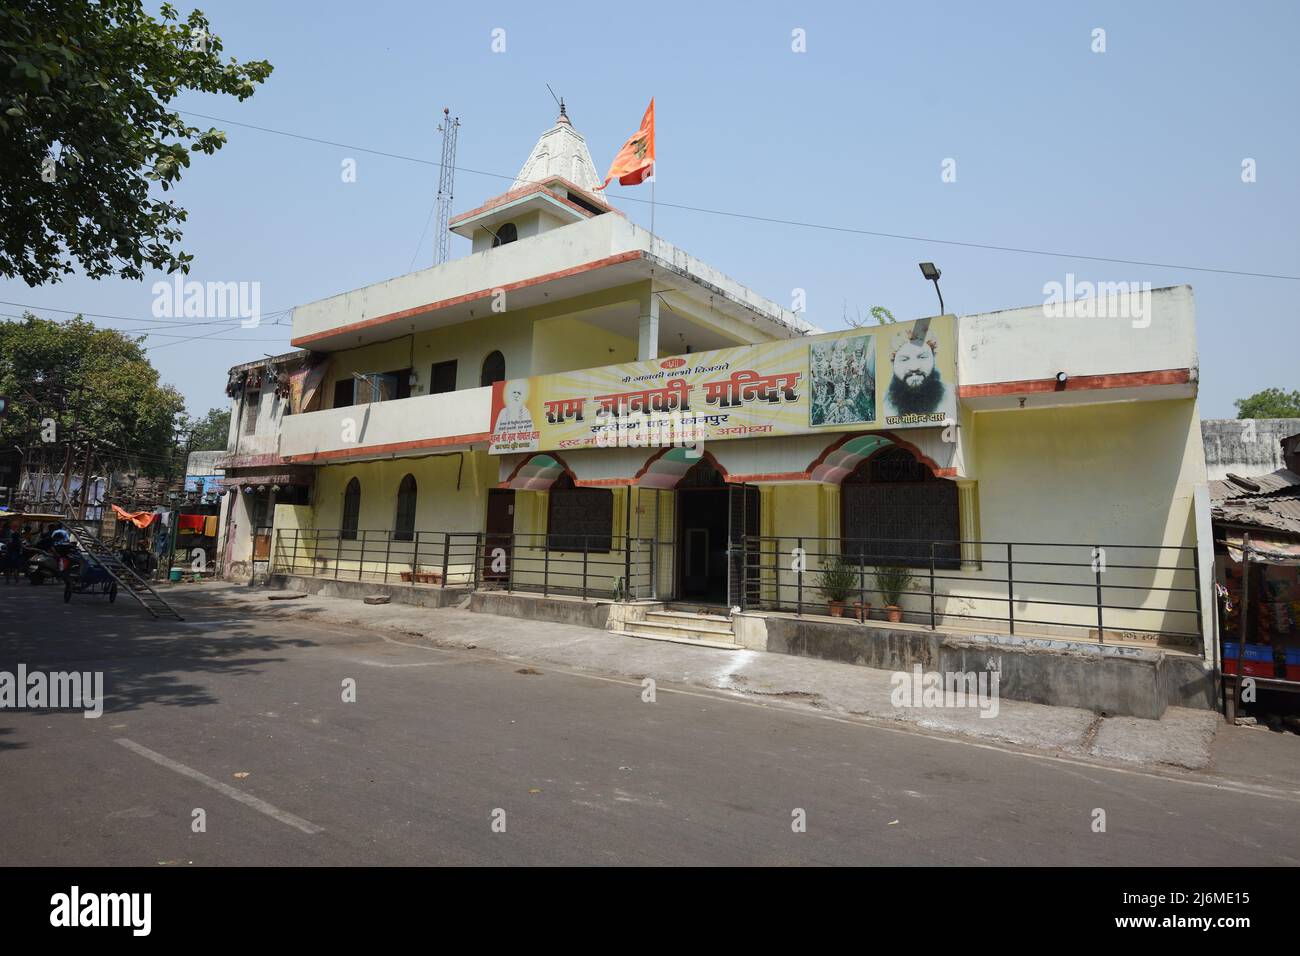 Ram janki mandir. Sarsaiya Ghat road, Civil lines, Kanpur, Uttar Pradesh, India. Stock Photo